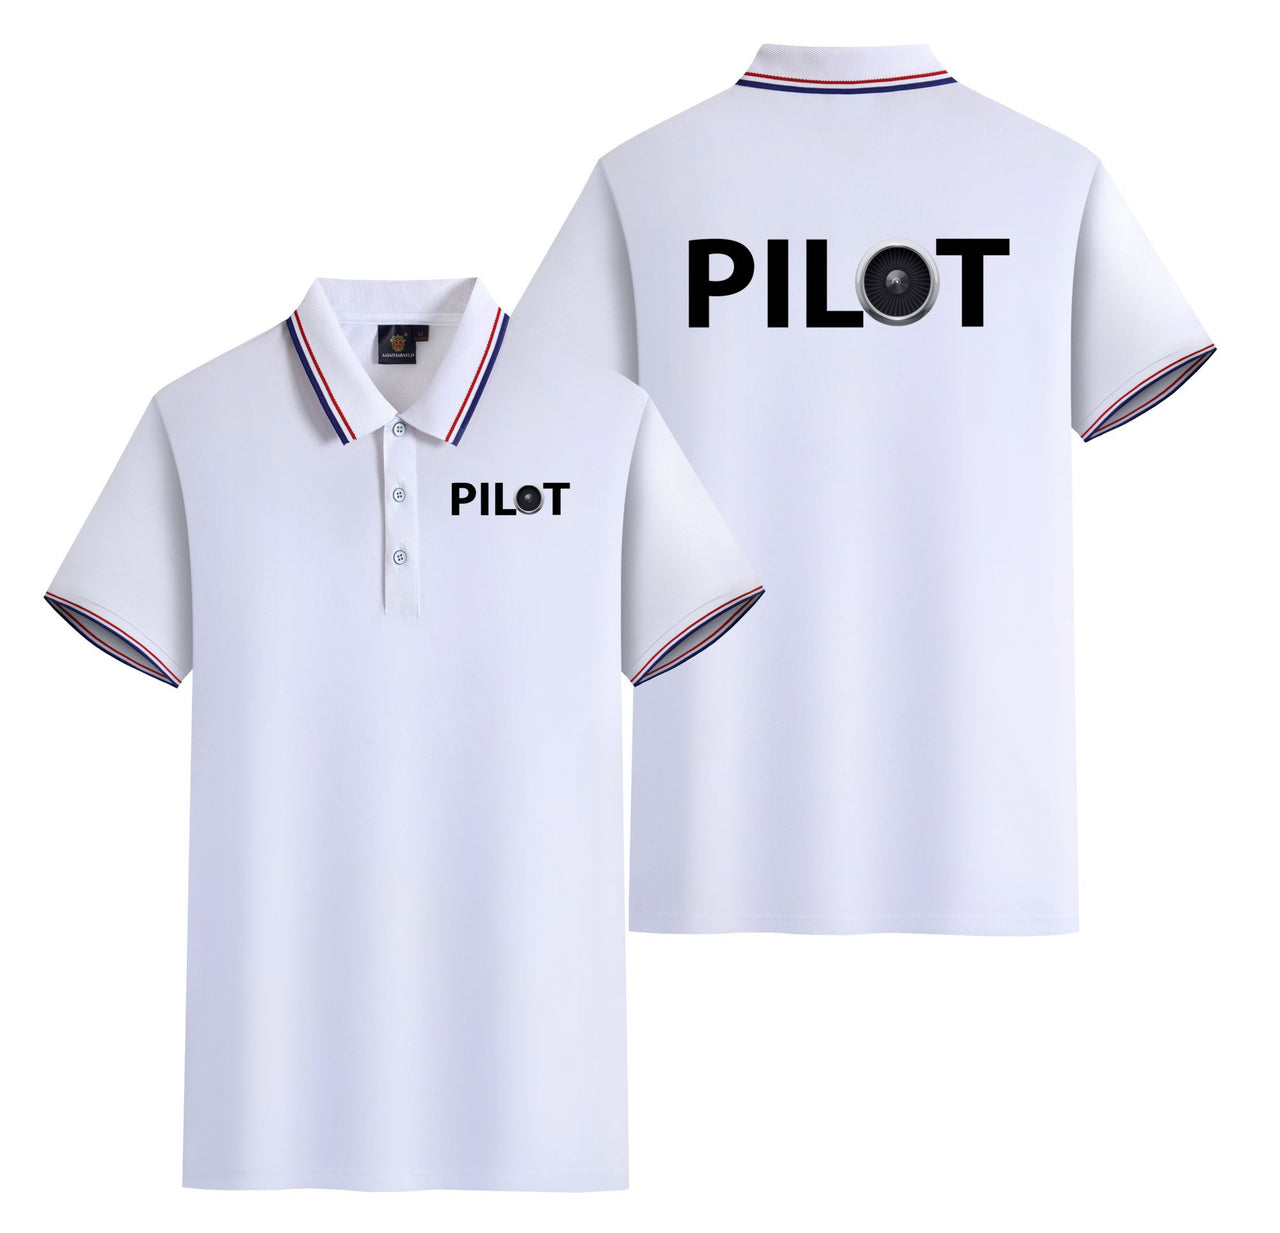 Pilot & Jet Engine Designed Stylish Polo T-Shirts (Double-Side)